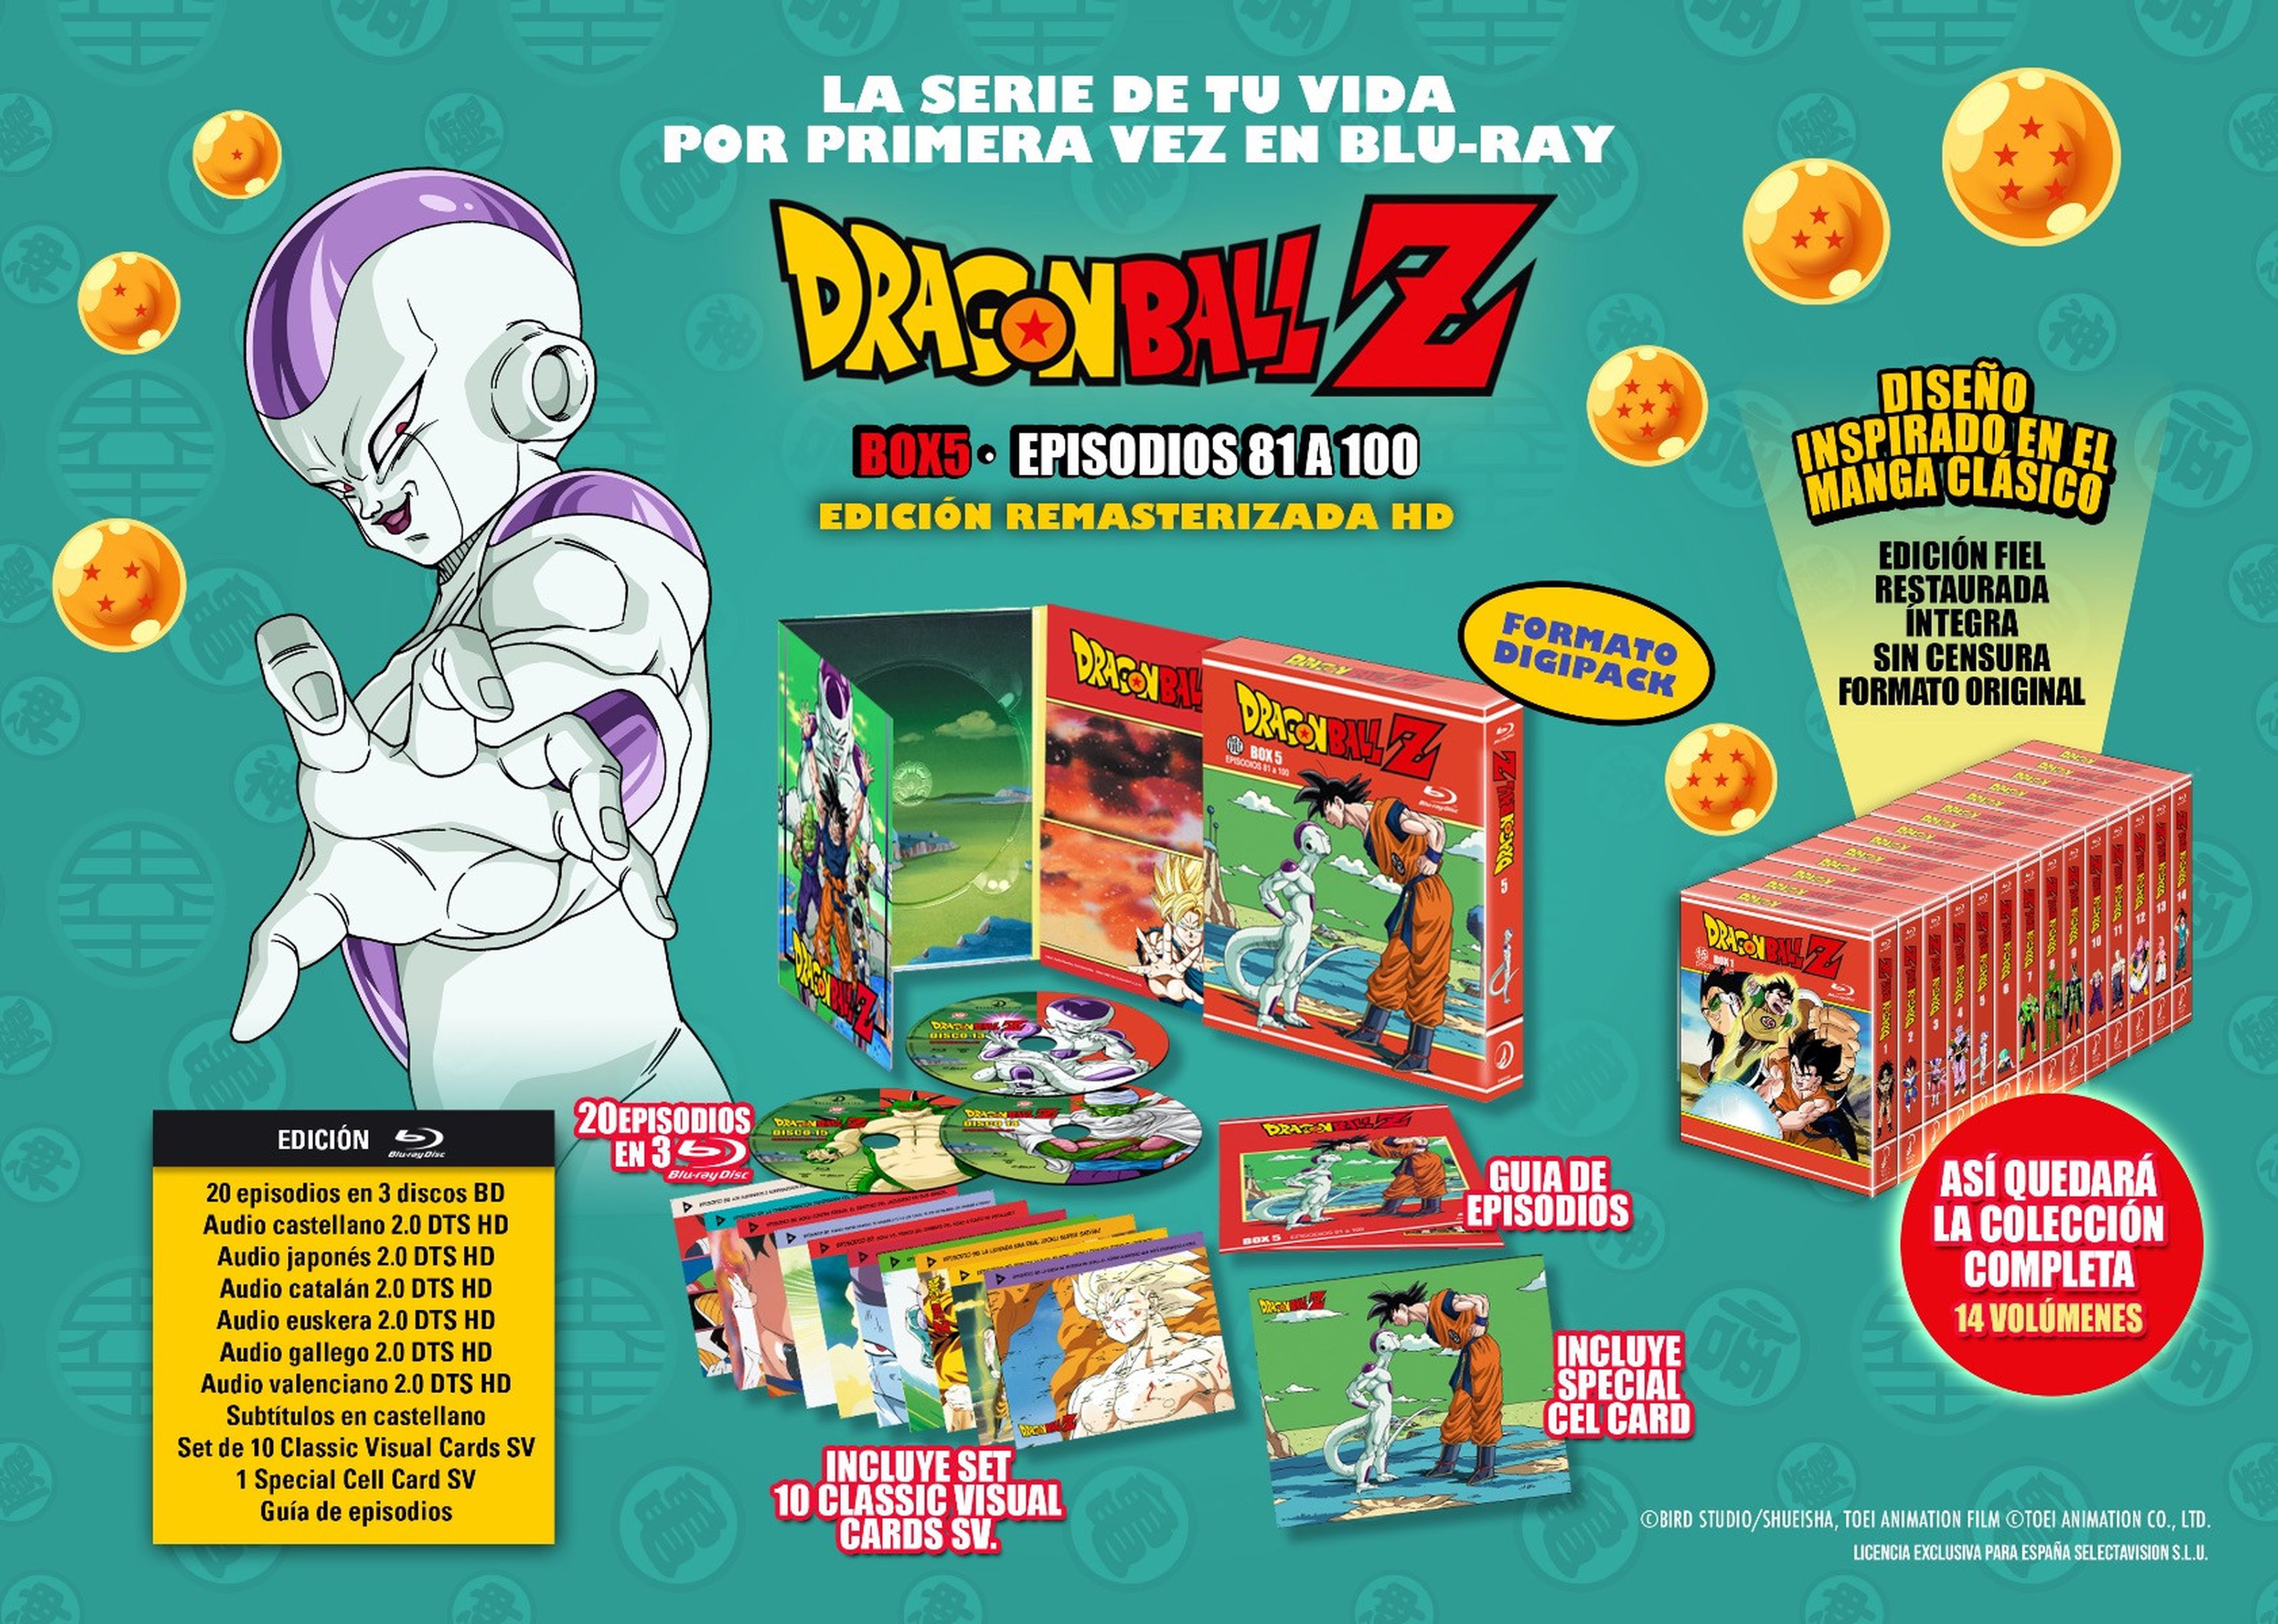 Dragon Ball Z - Portada y fecha de lanzamiento del Box 5 de la serie en Blu-ray